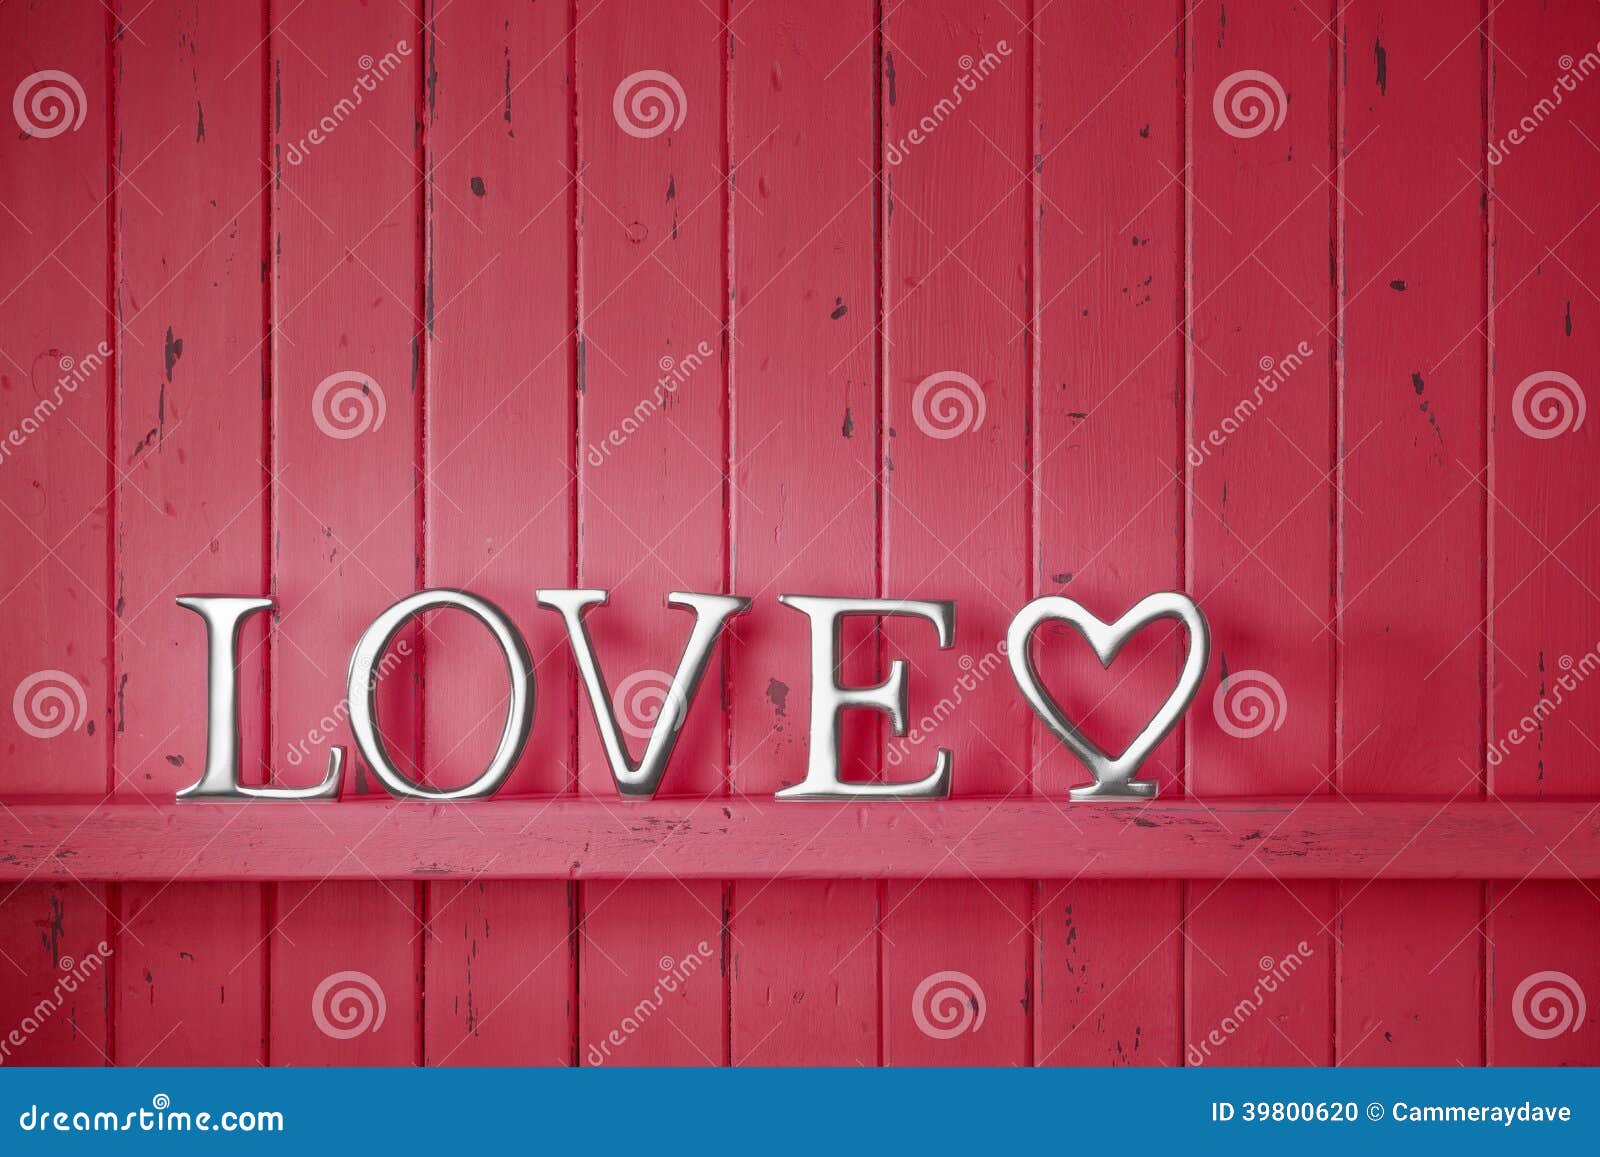 love red heart valentine background